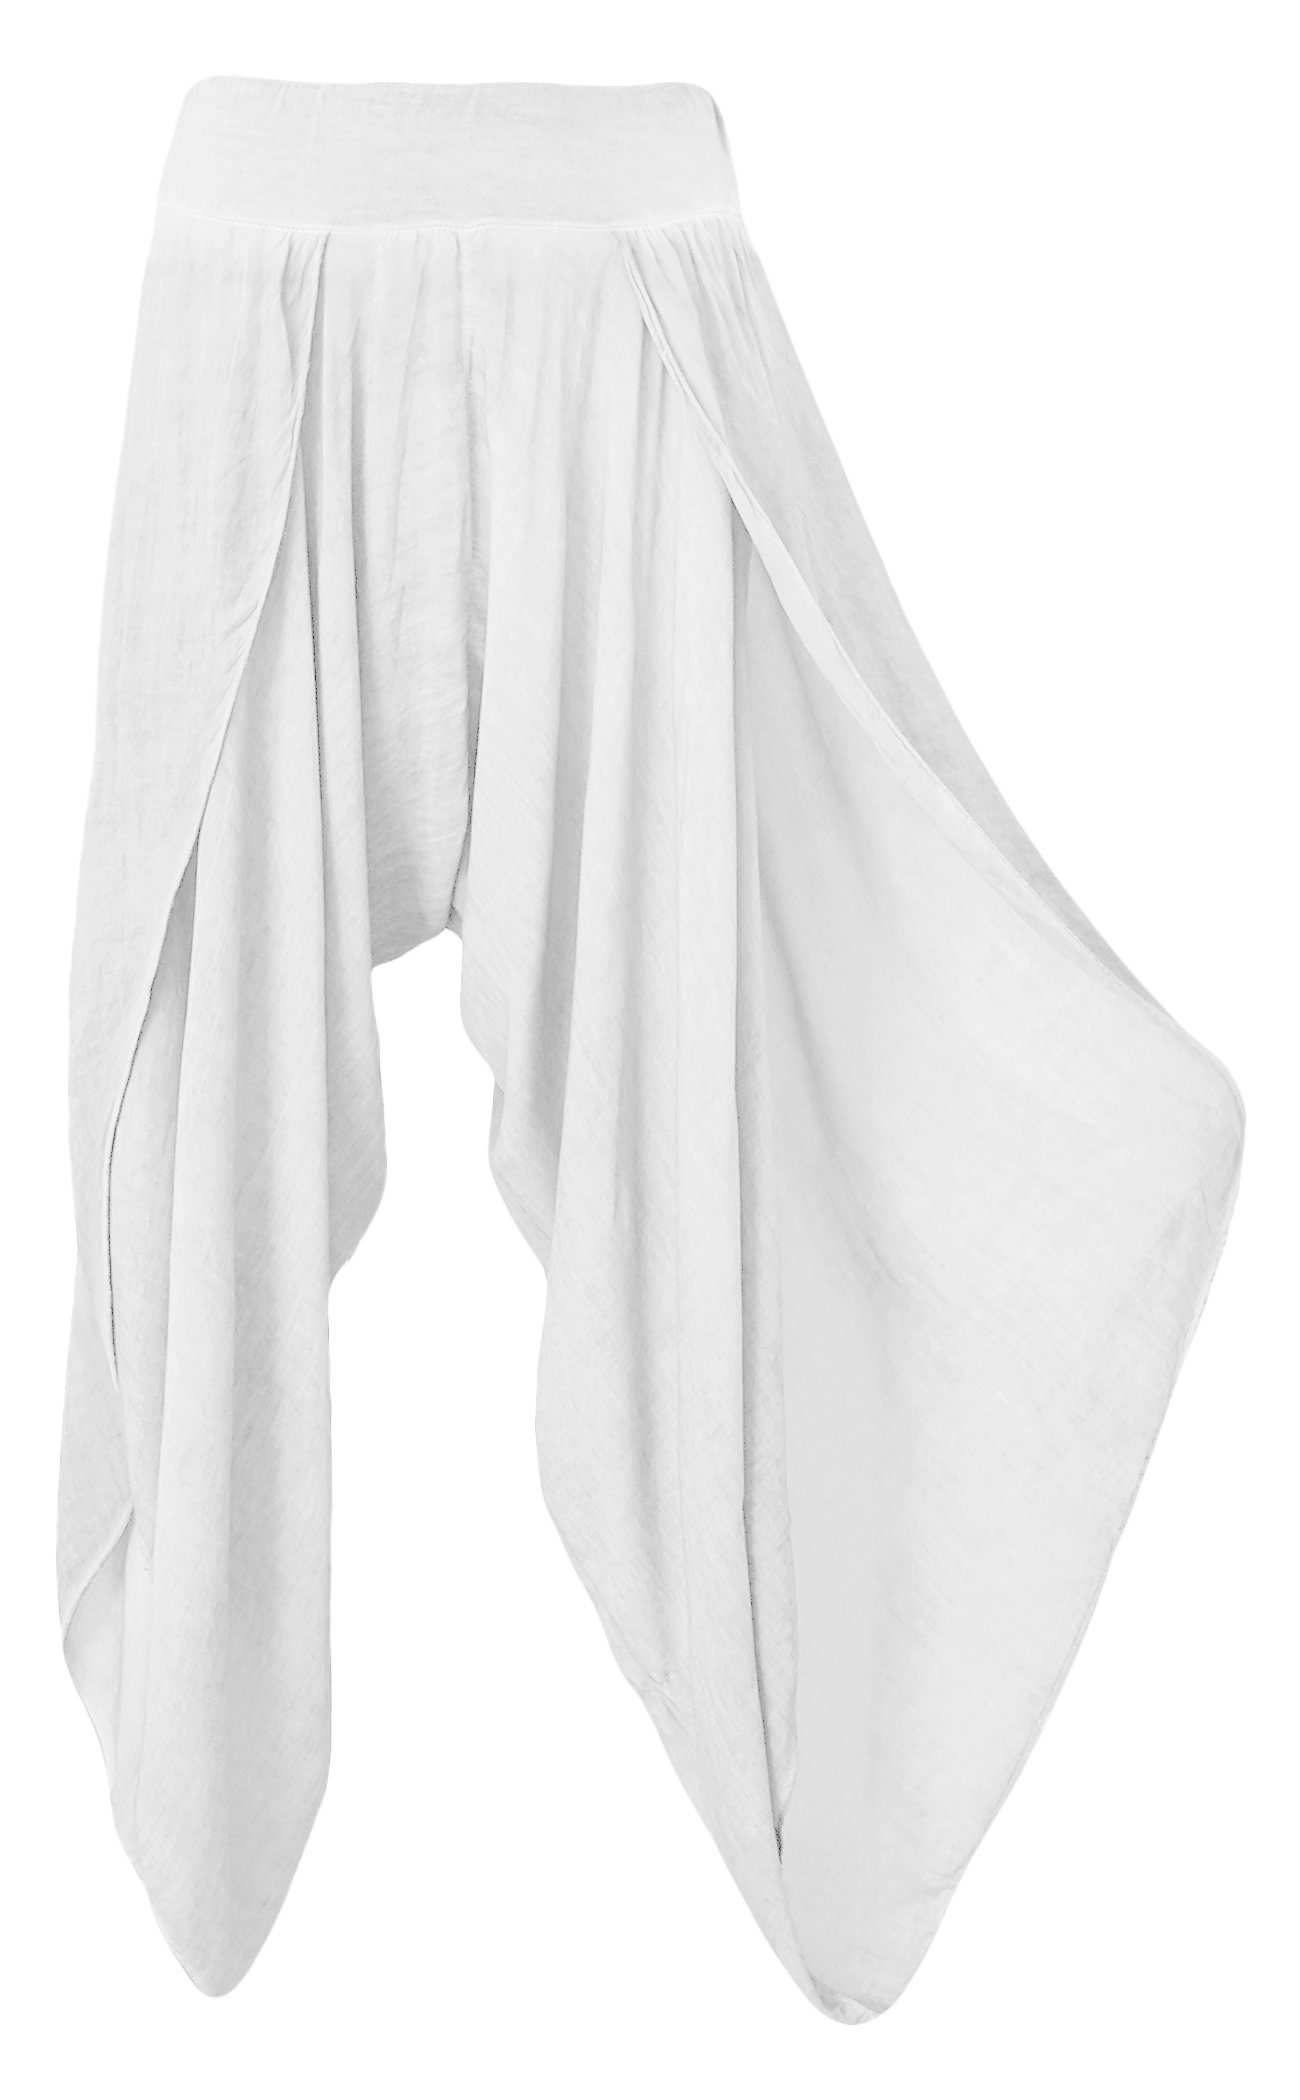 Aurela Damenmode Haremshose Luftige Damen Hosen Sommerhosen mit Beinschlitzen super leichtes Sommergewebe Weiß